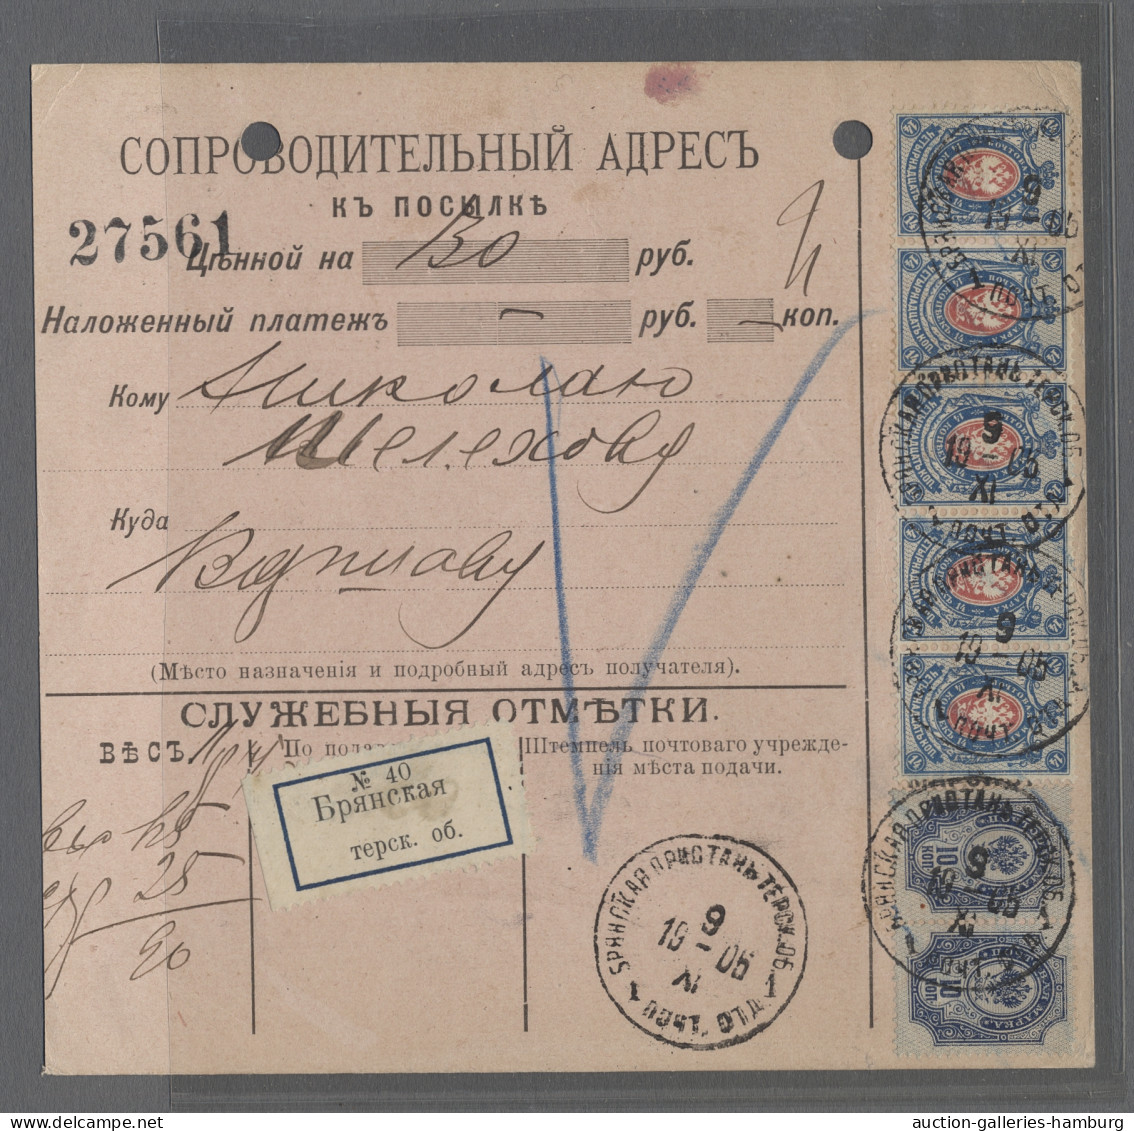 GA/Cover Russia - Postal Stationary: 1904-1913, Zwei Verschiedene Anweisungen Zu 15 K. Bz - Ganzsachen